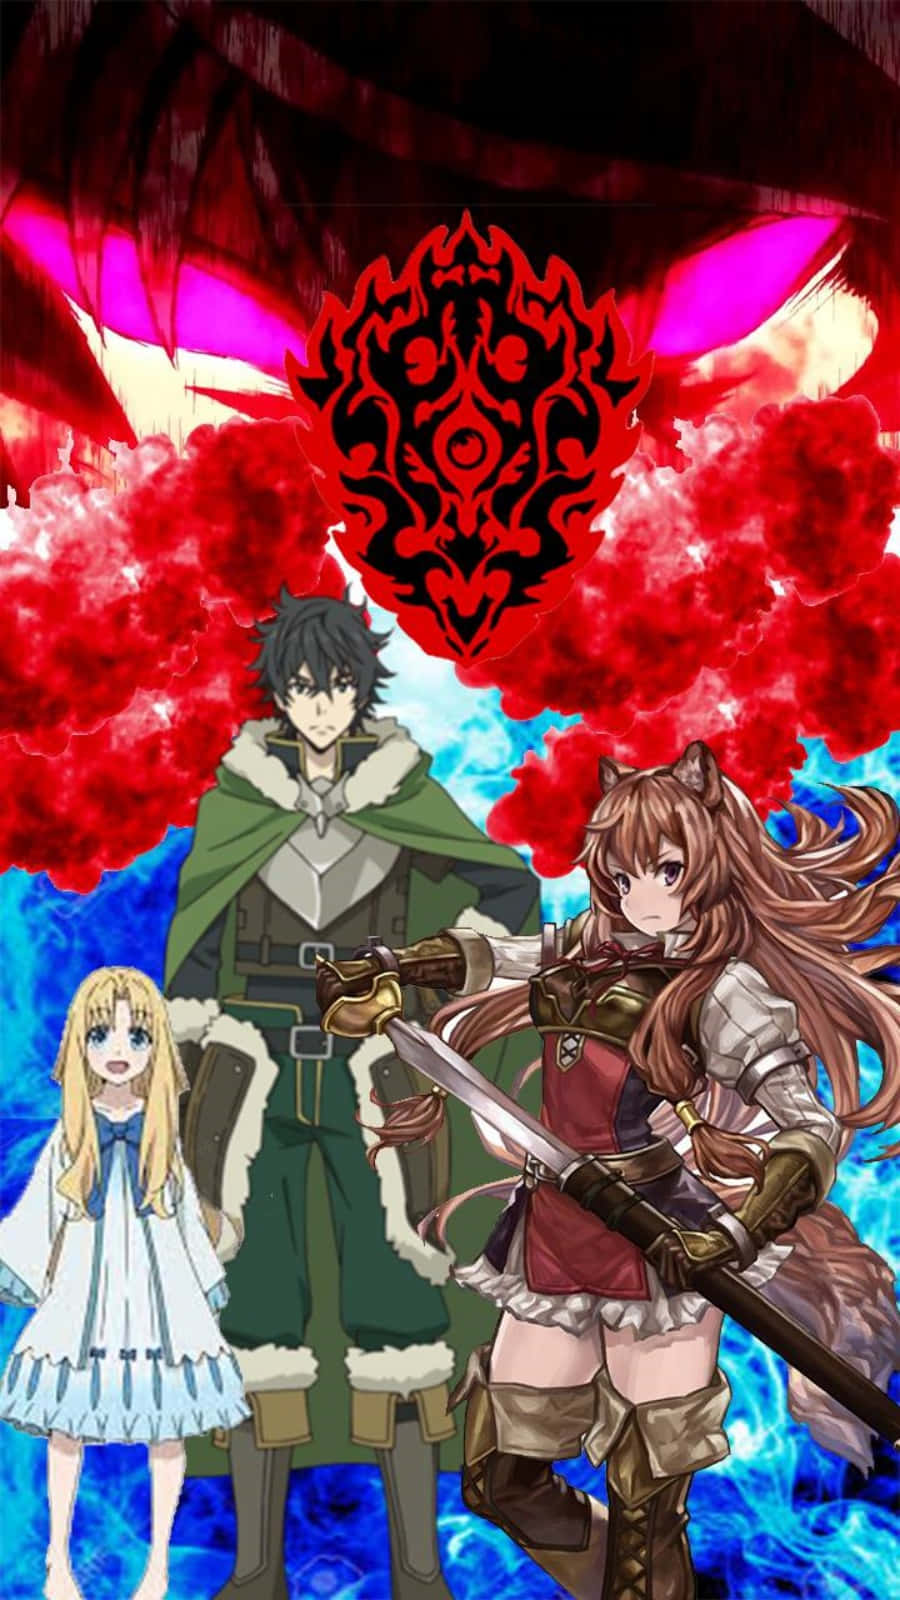 The Anime Poster For The Shinobi Legends